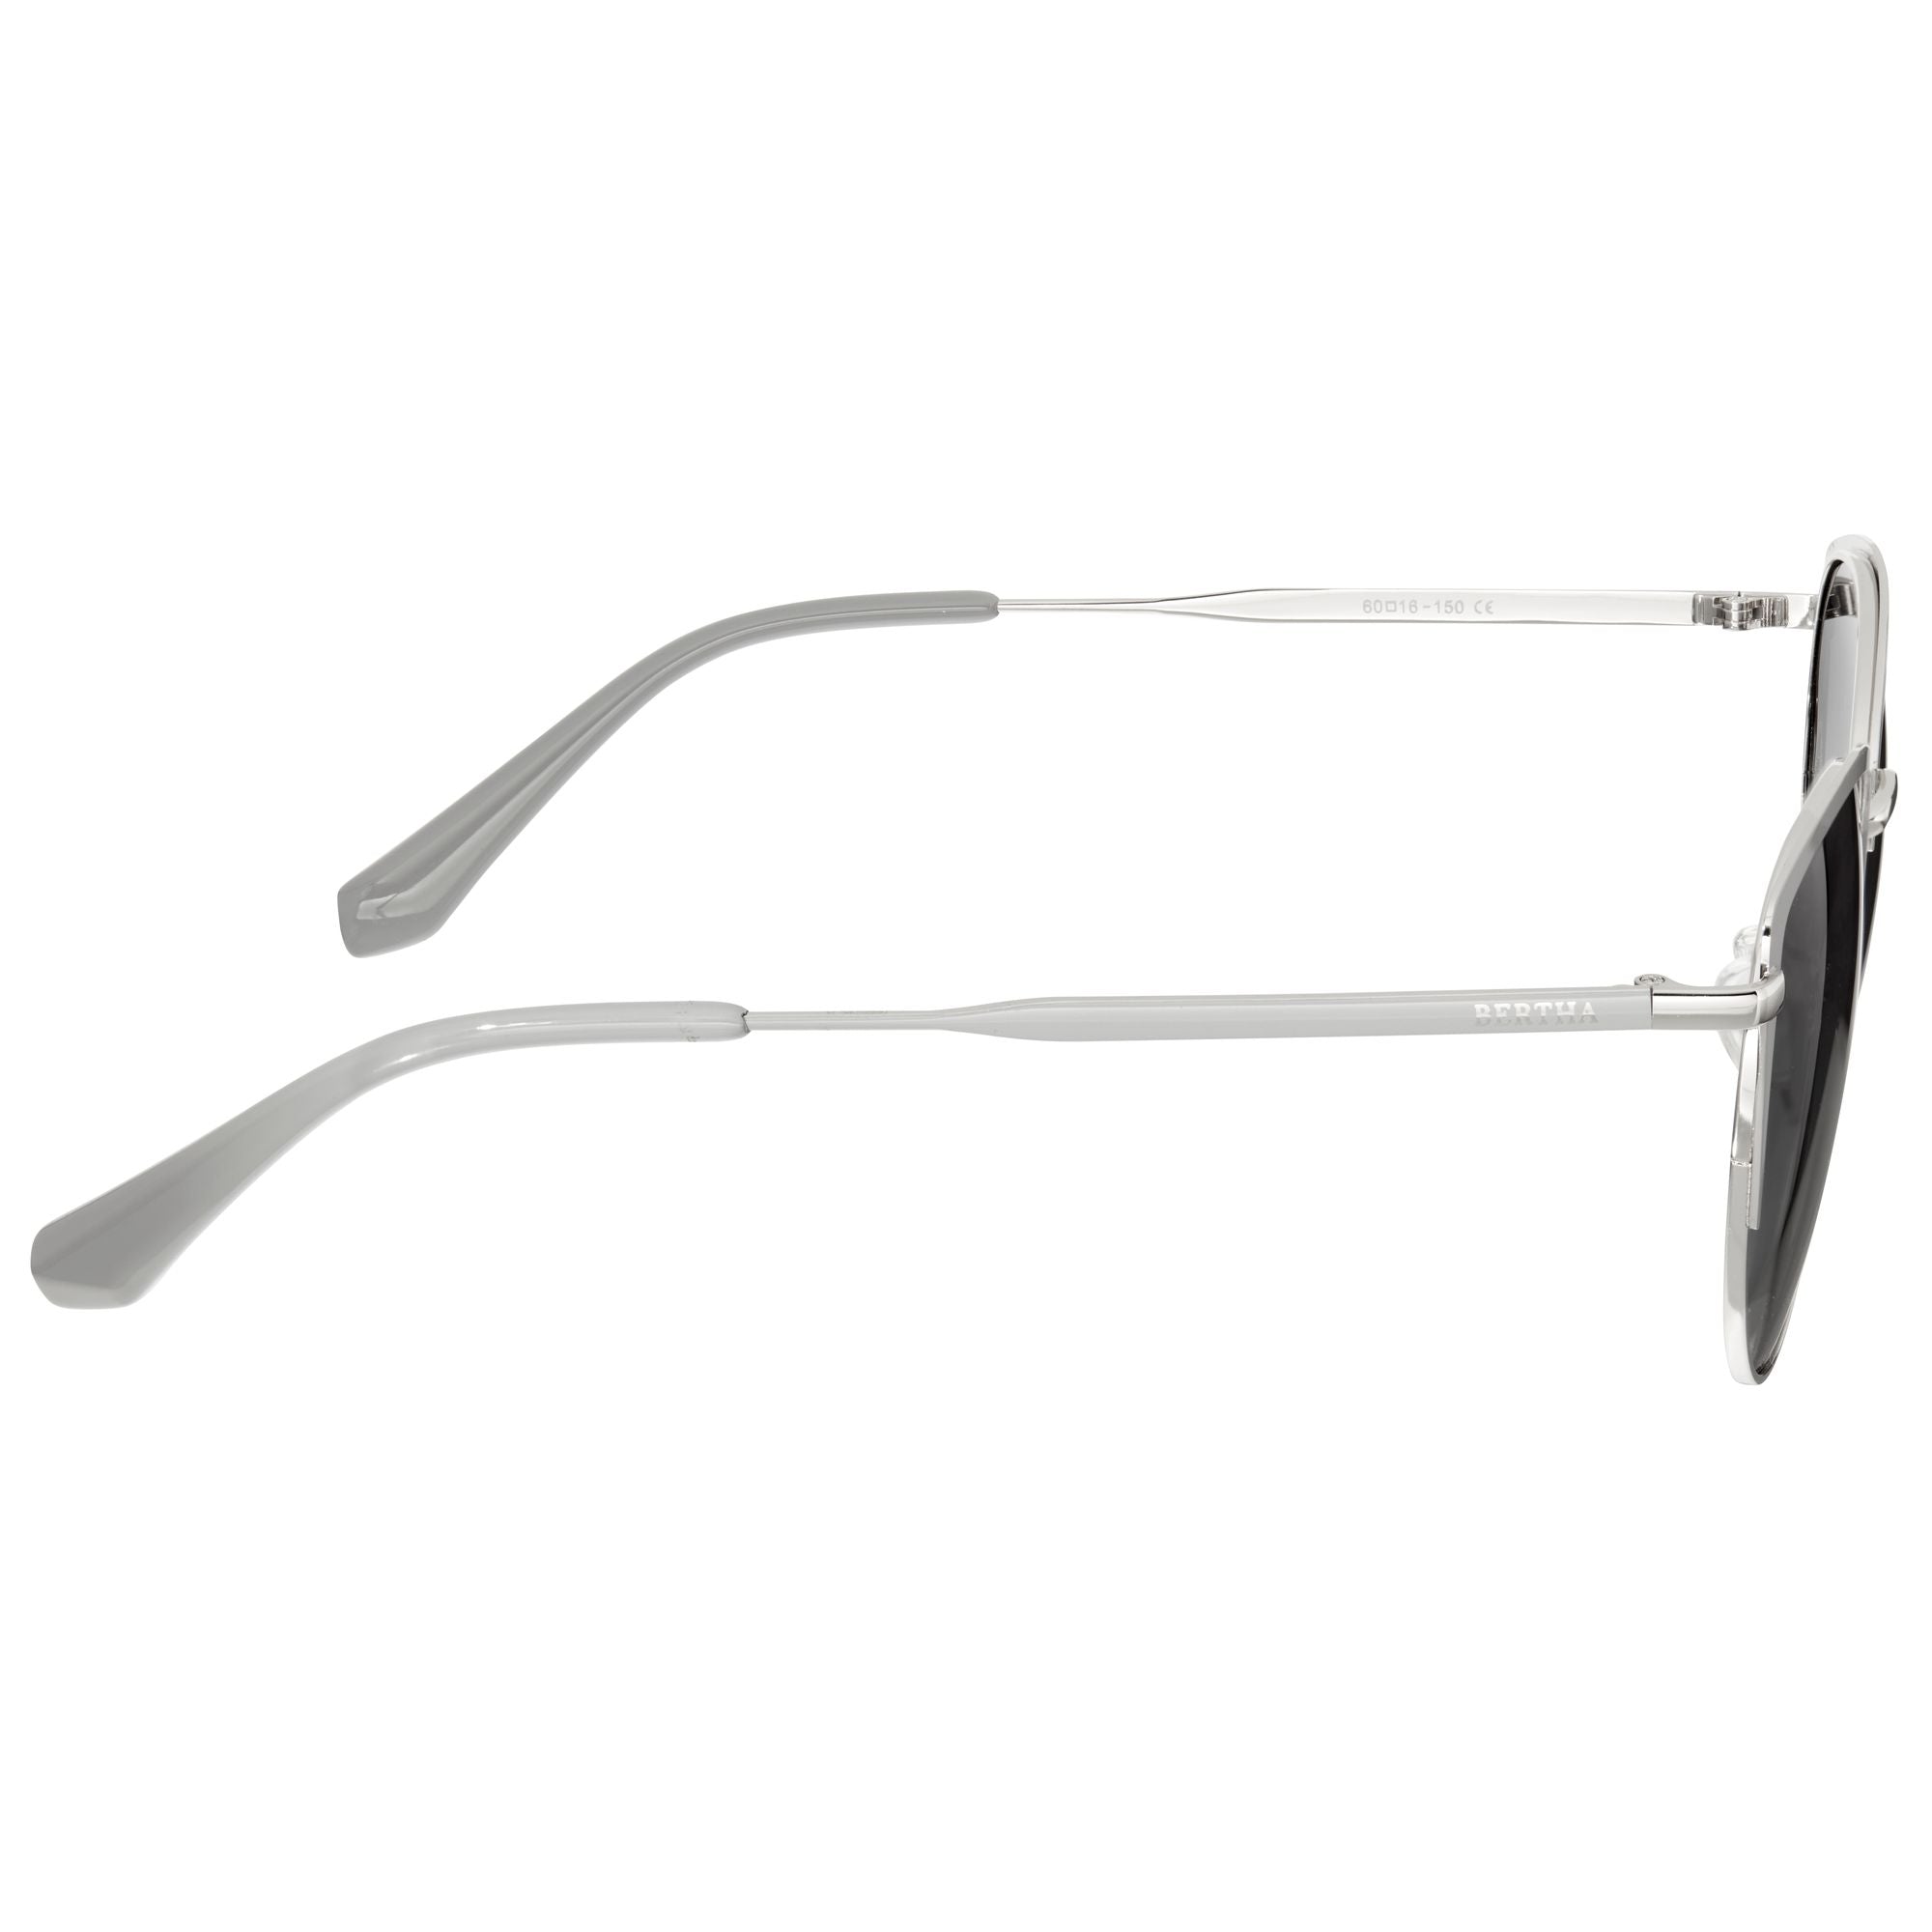 Bertha Darby Polarized Sunglasses - Silver/Grey - BRSBR049GY